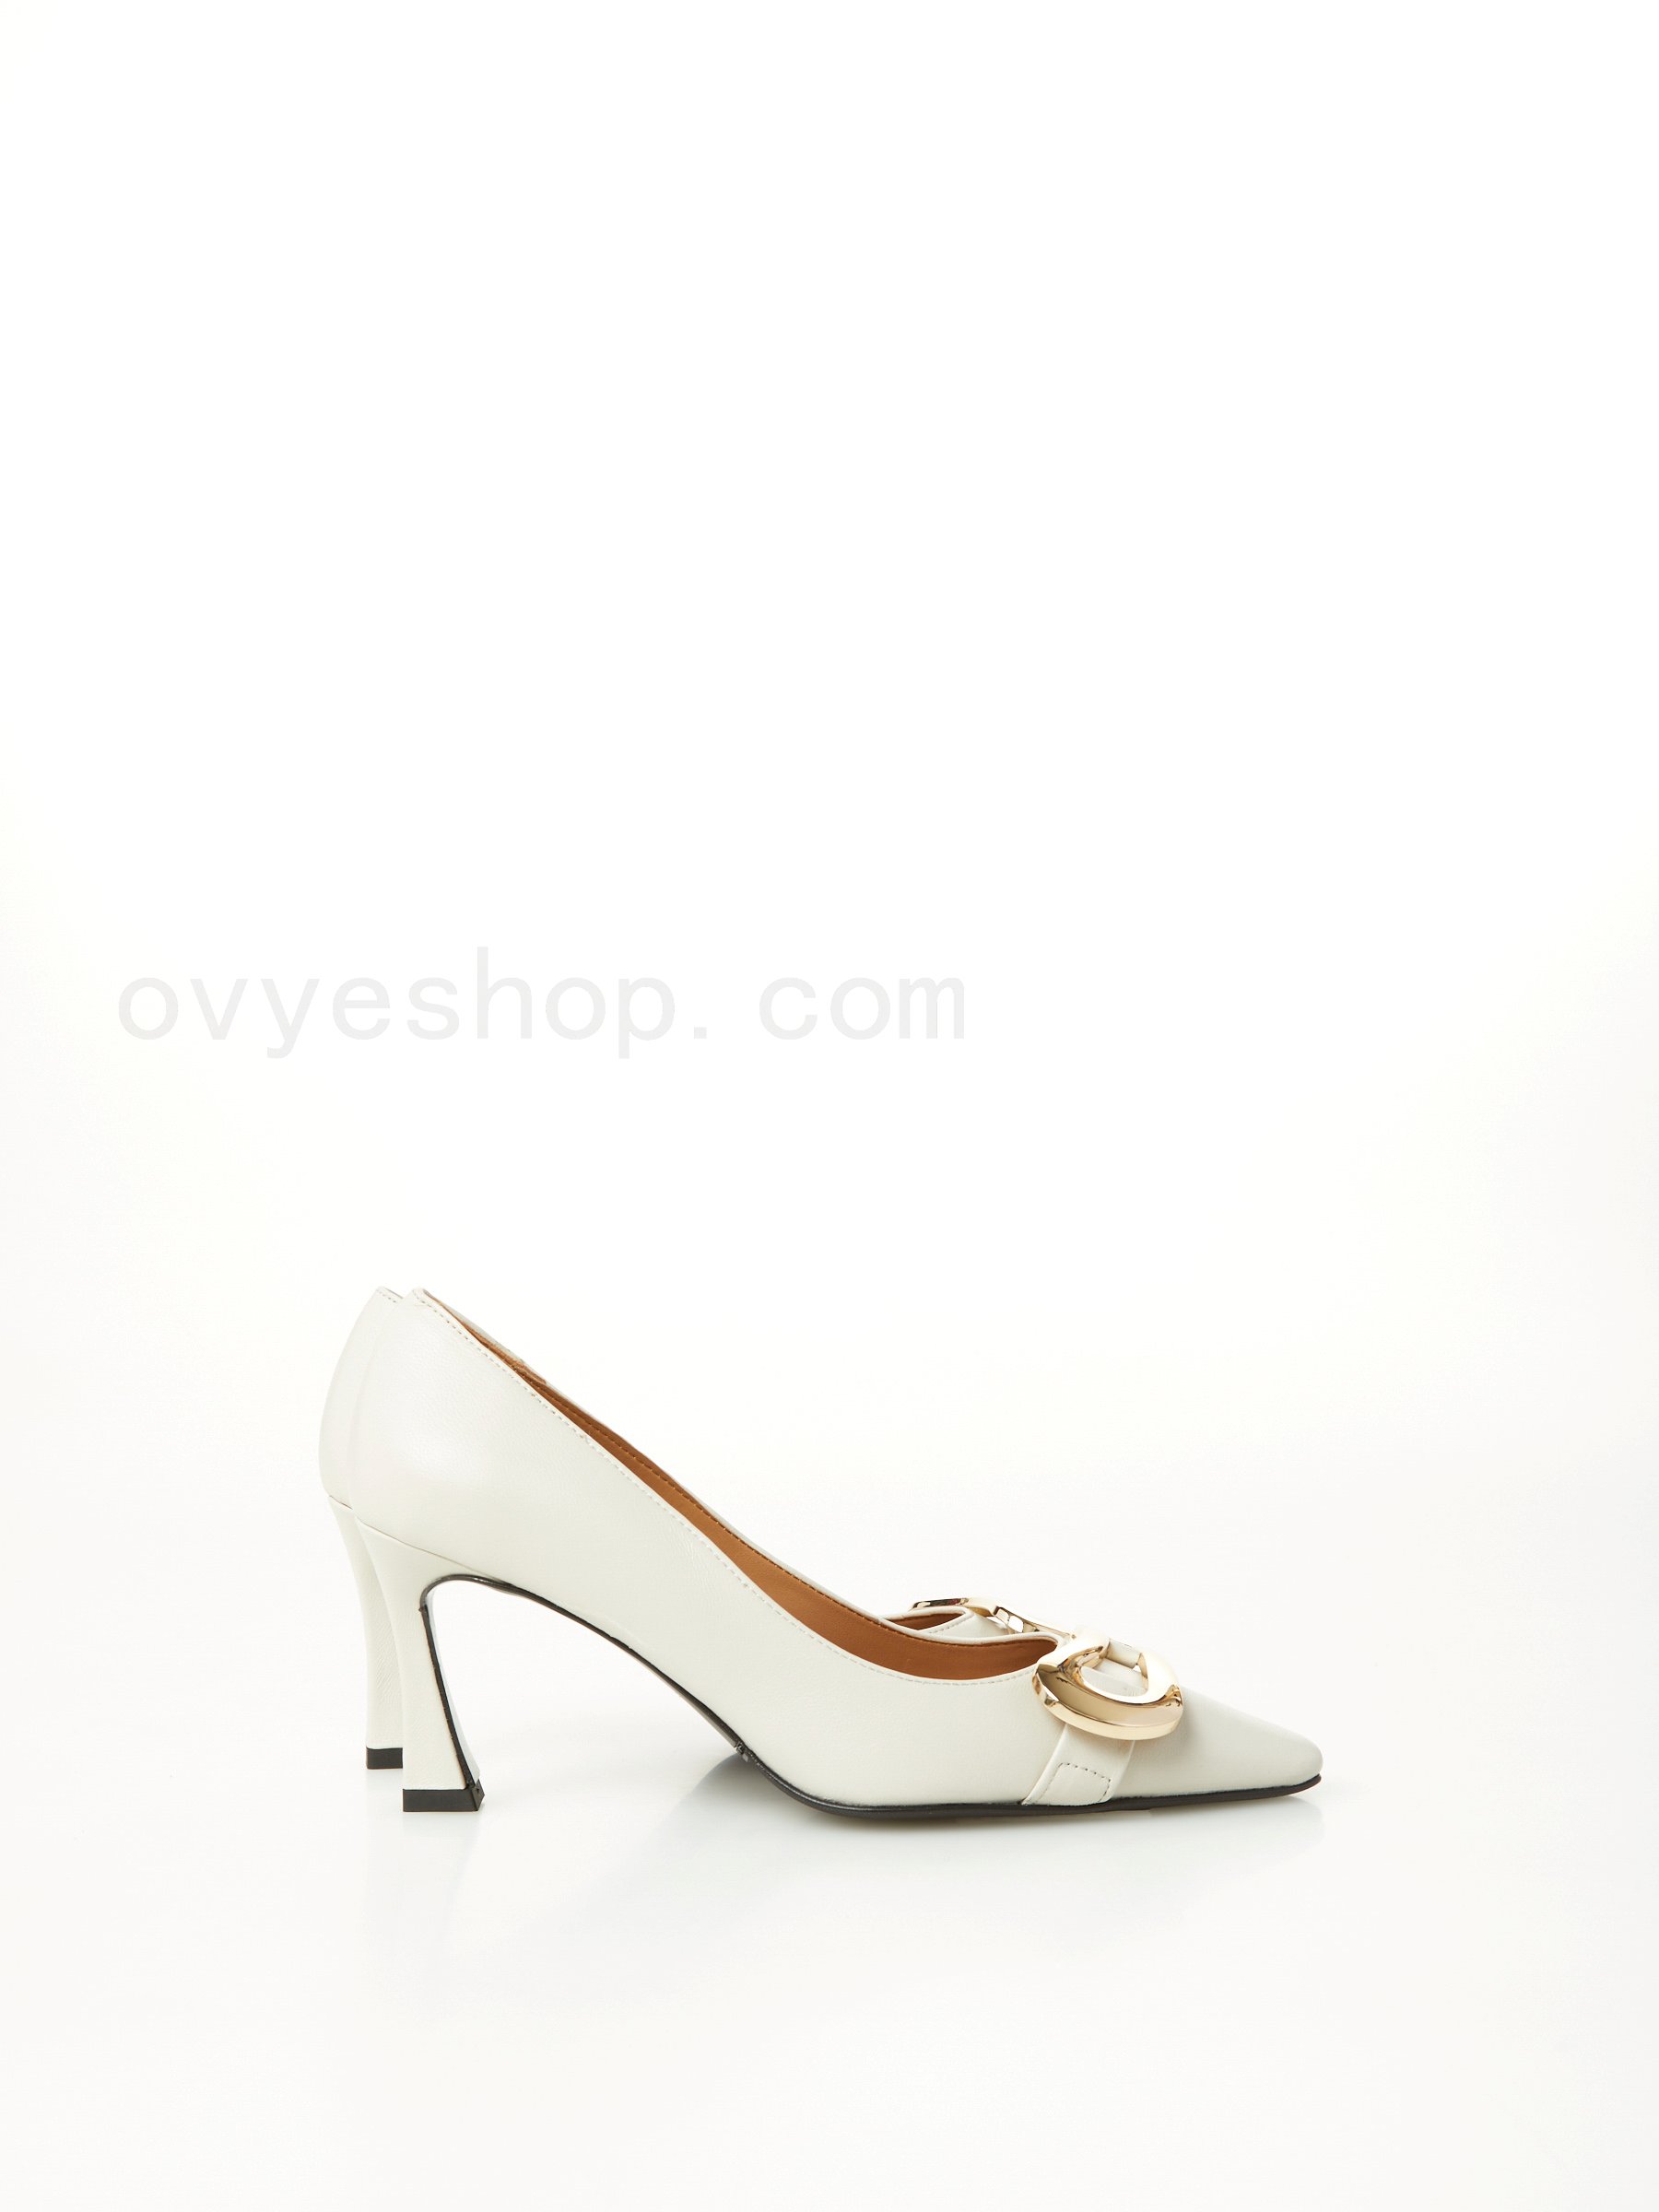 (image for) scarpe alla moda Leather Pump F0817885-0598